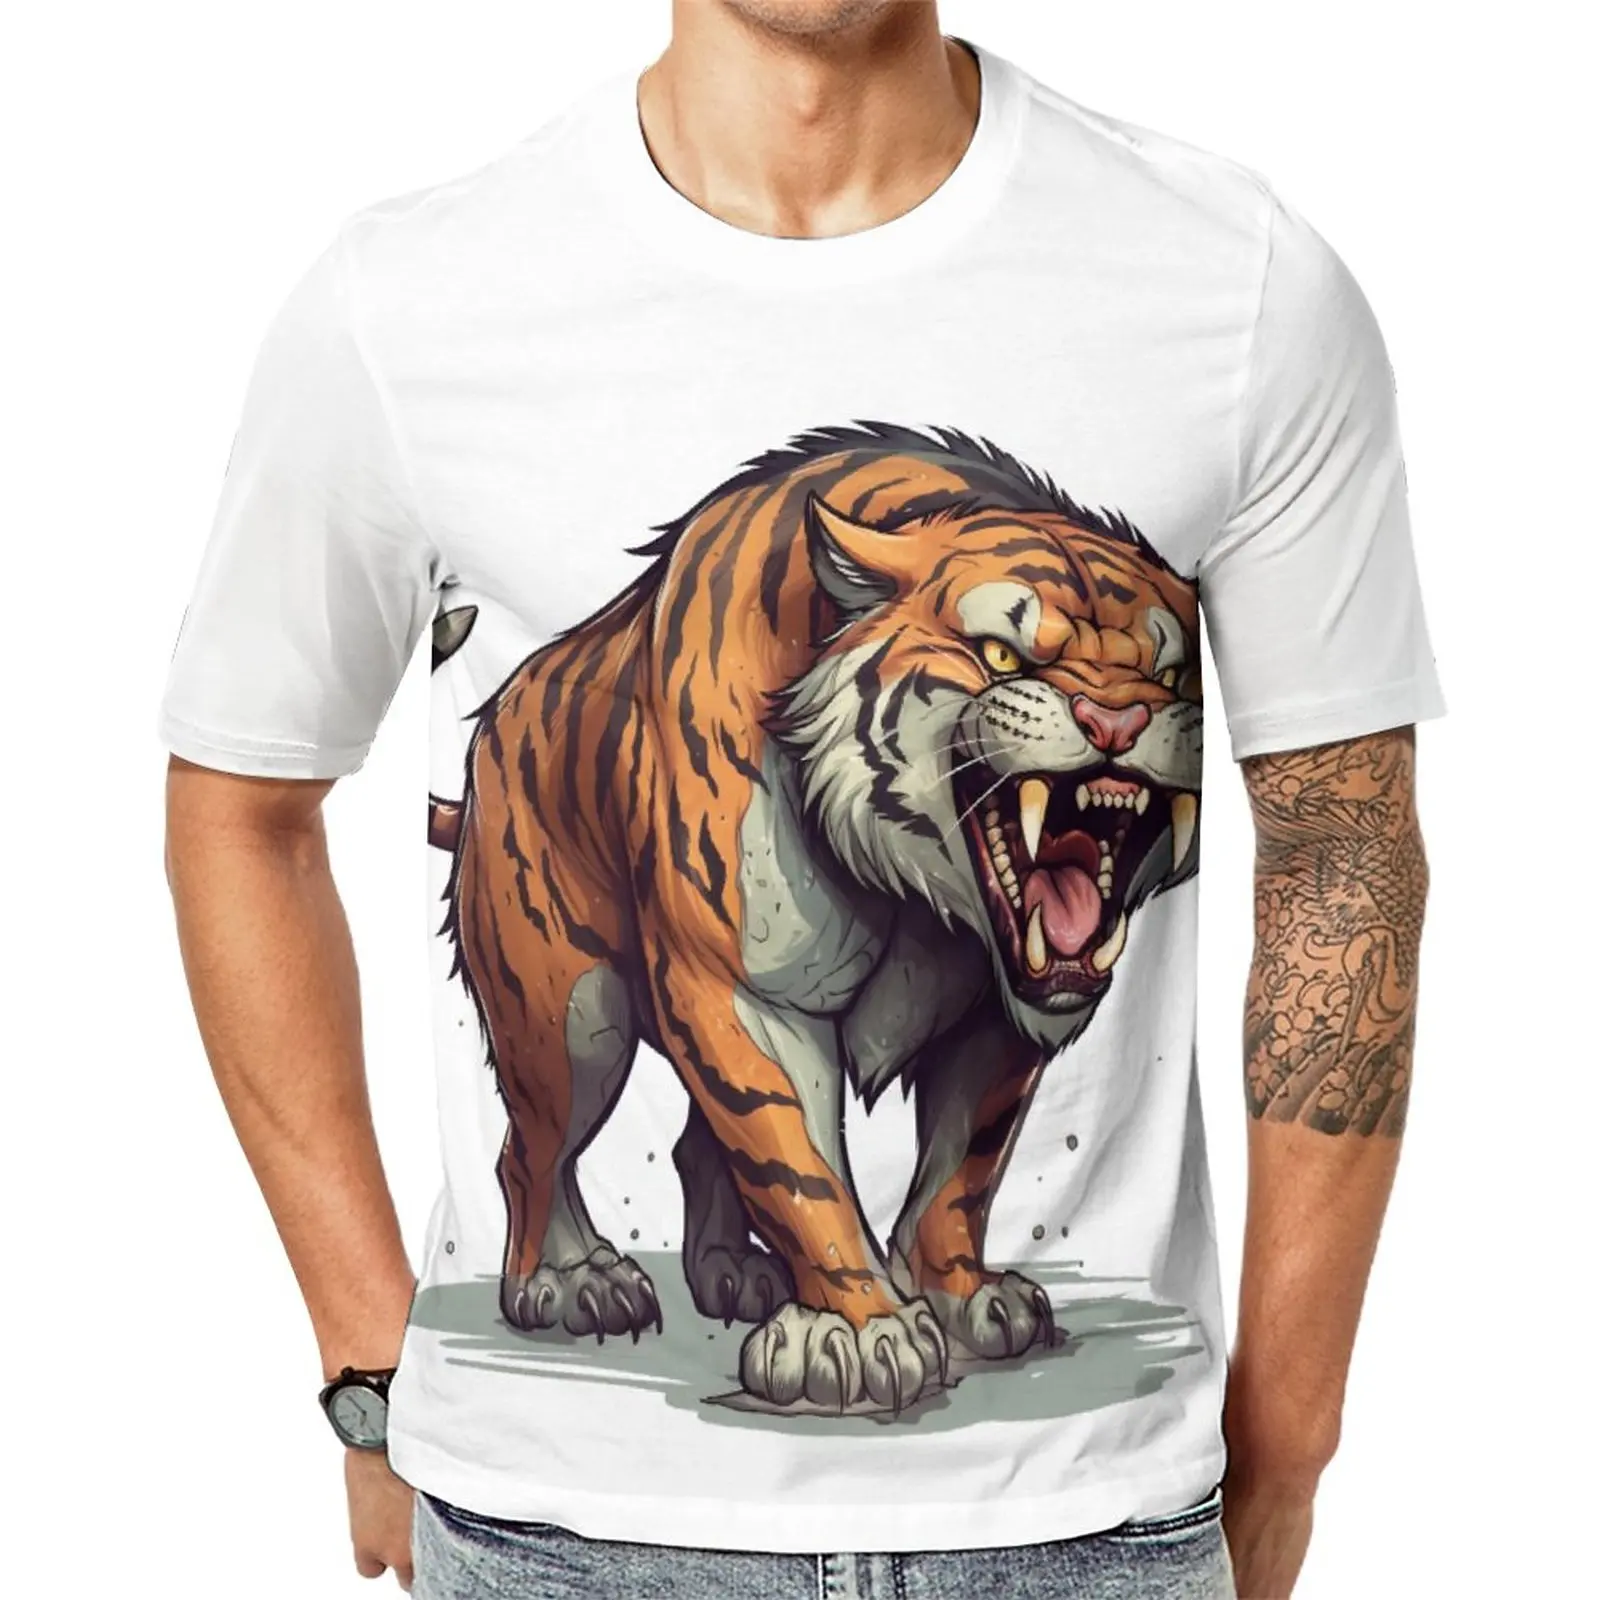 

Футболка с принтом тигра яркие цвета Потрясающие футболки с круглым вырезом модная футболка пляжные мужские дизайнерские топы большого размера 5XL 6XL